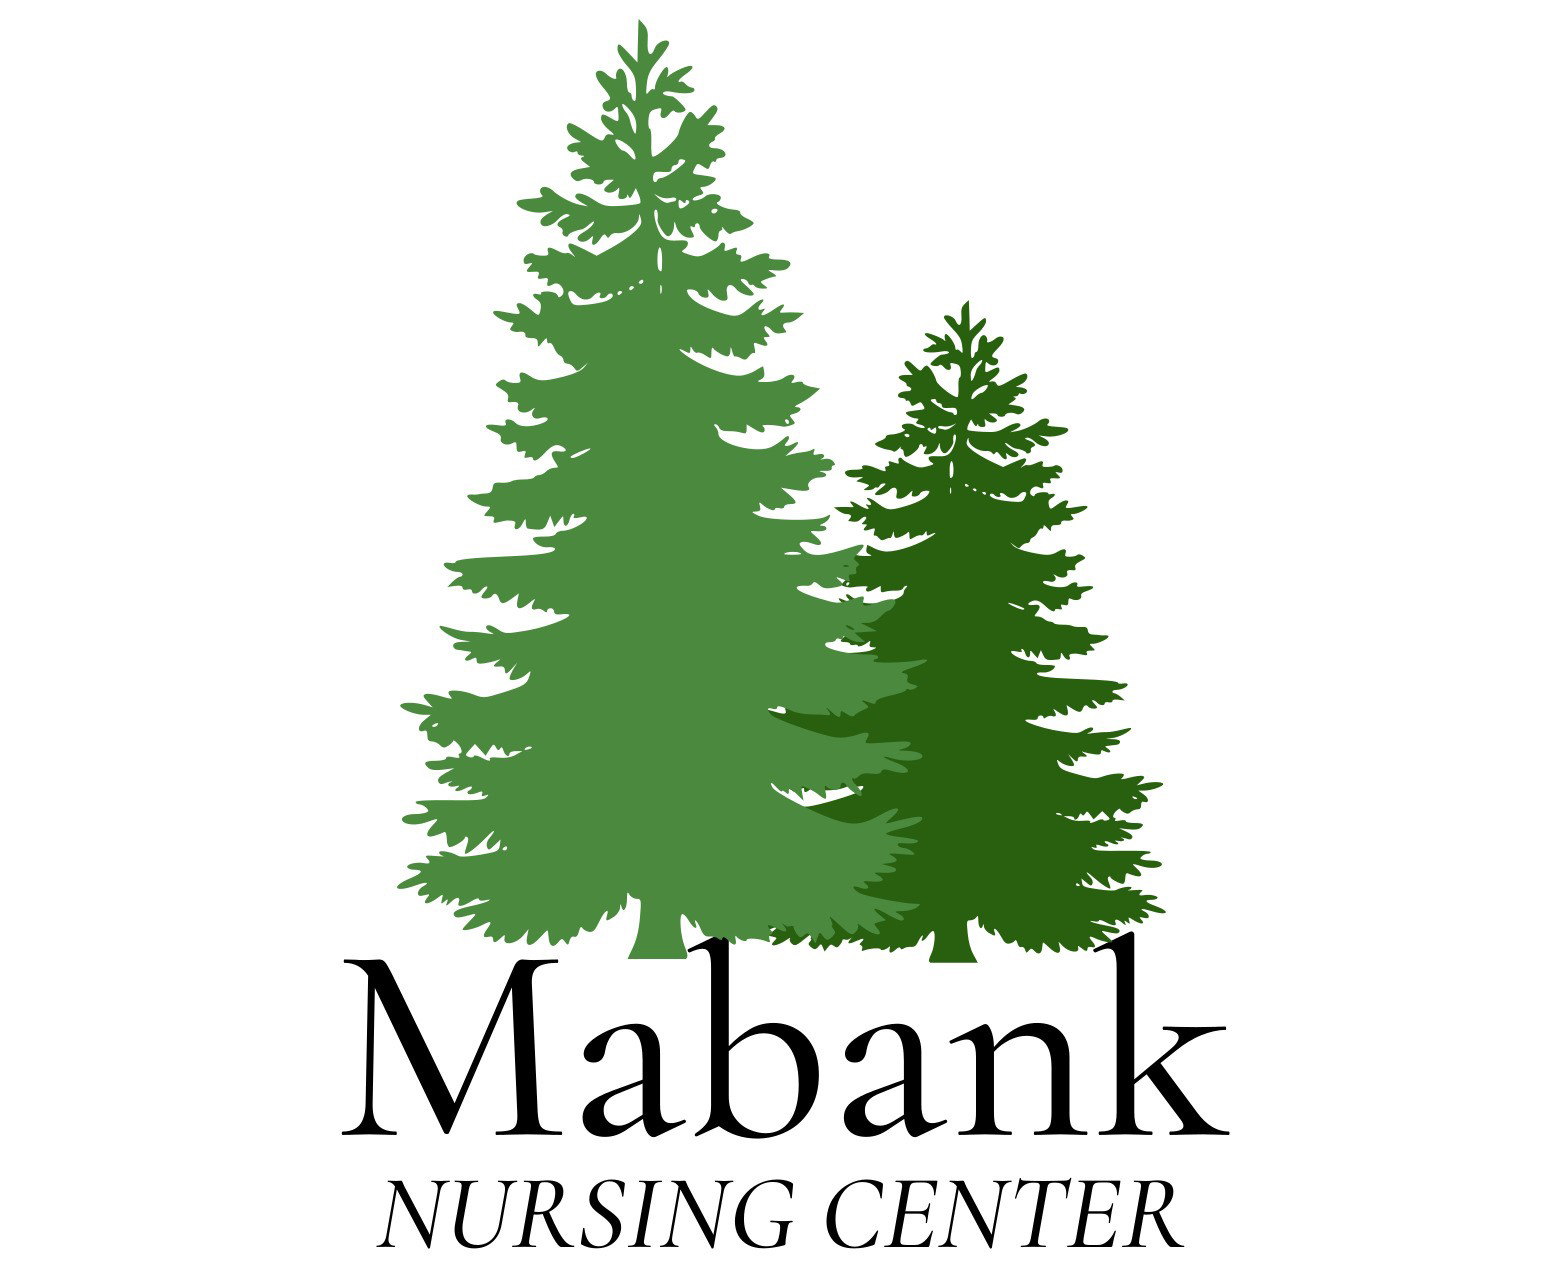 Mabank Nursing Center